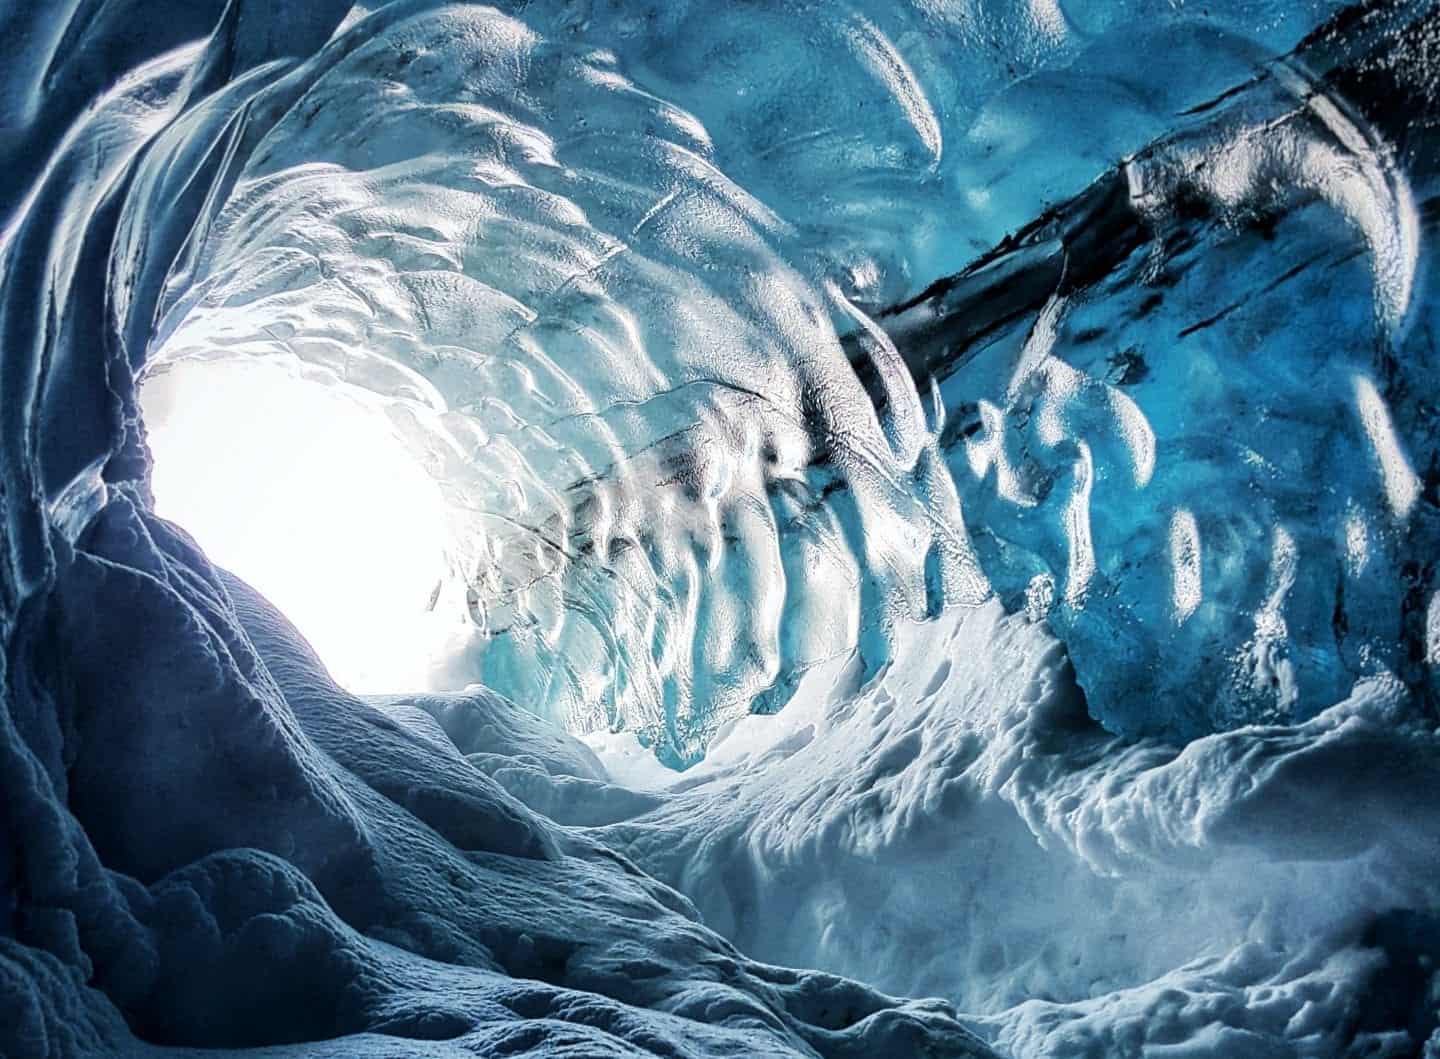 experiencias únicas en Vik Islandia, túnel hecho de hielo que pasa a través de cuevas de hielo subterráneas hacia la luz brillante del exterior